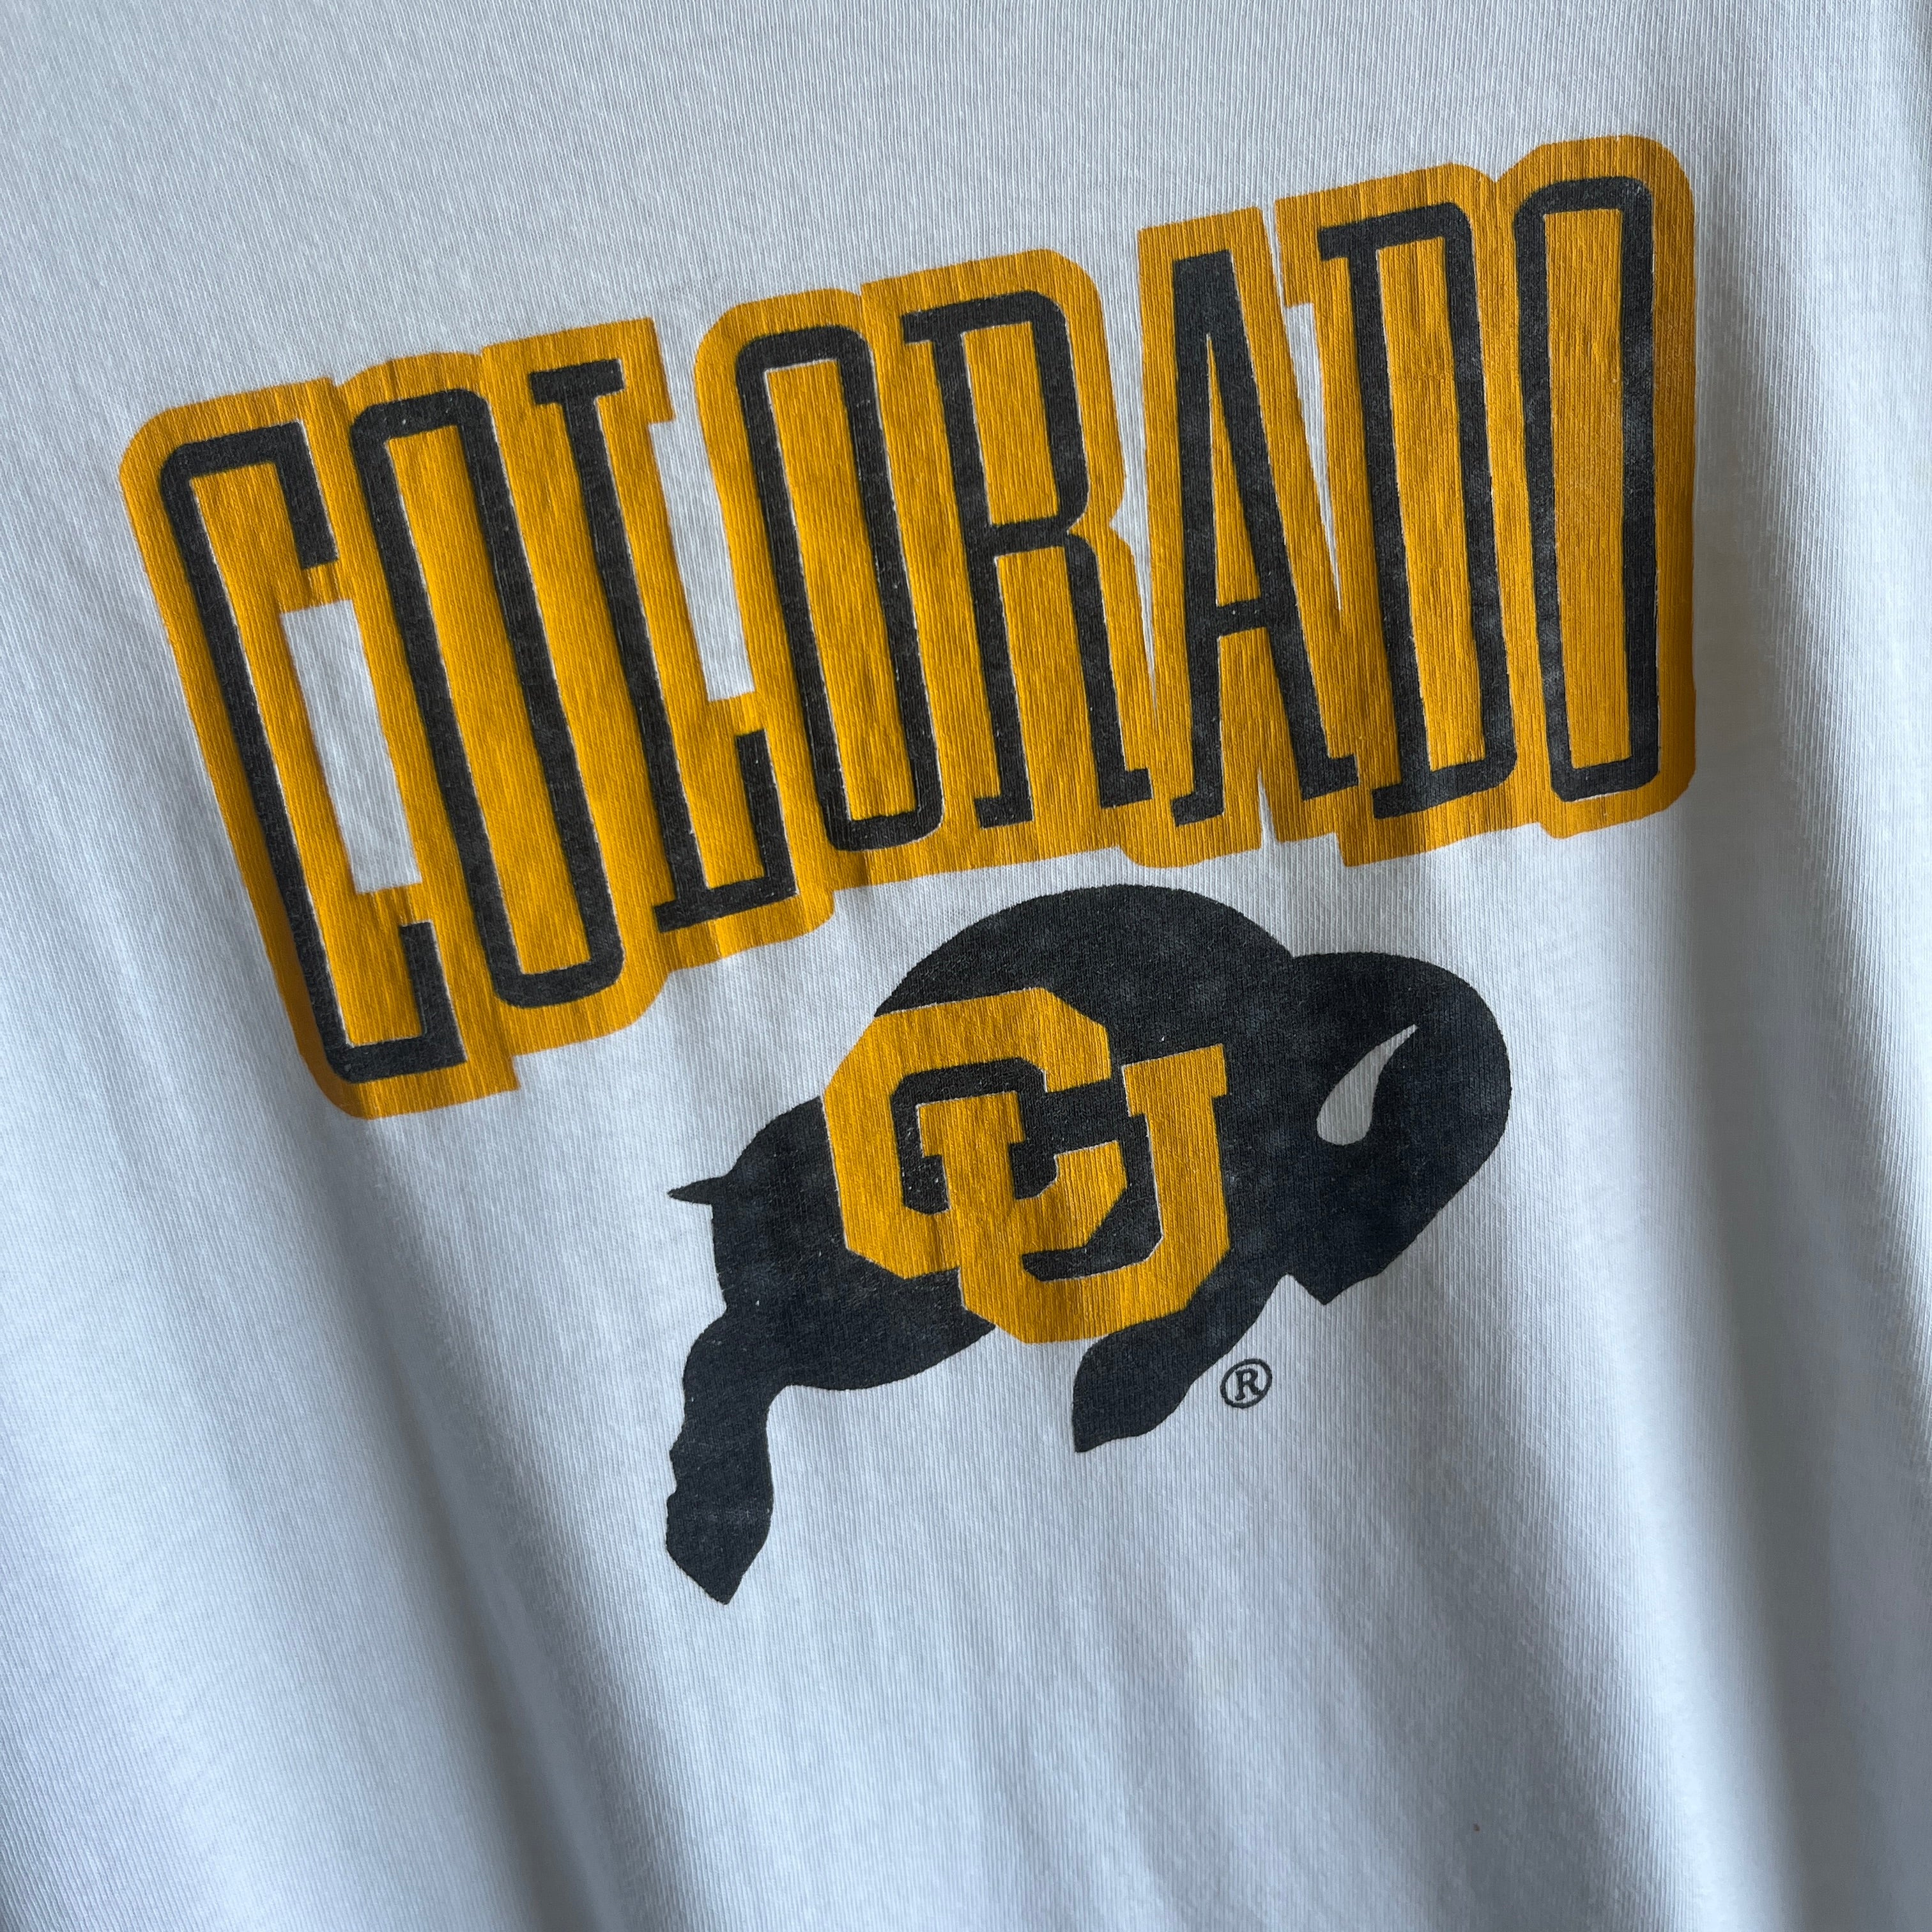 1990s Colorado T-Shirt